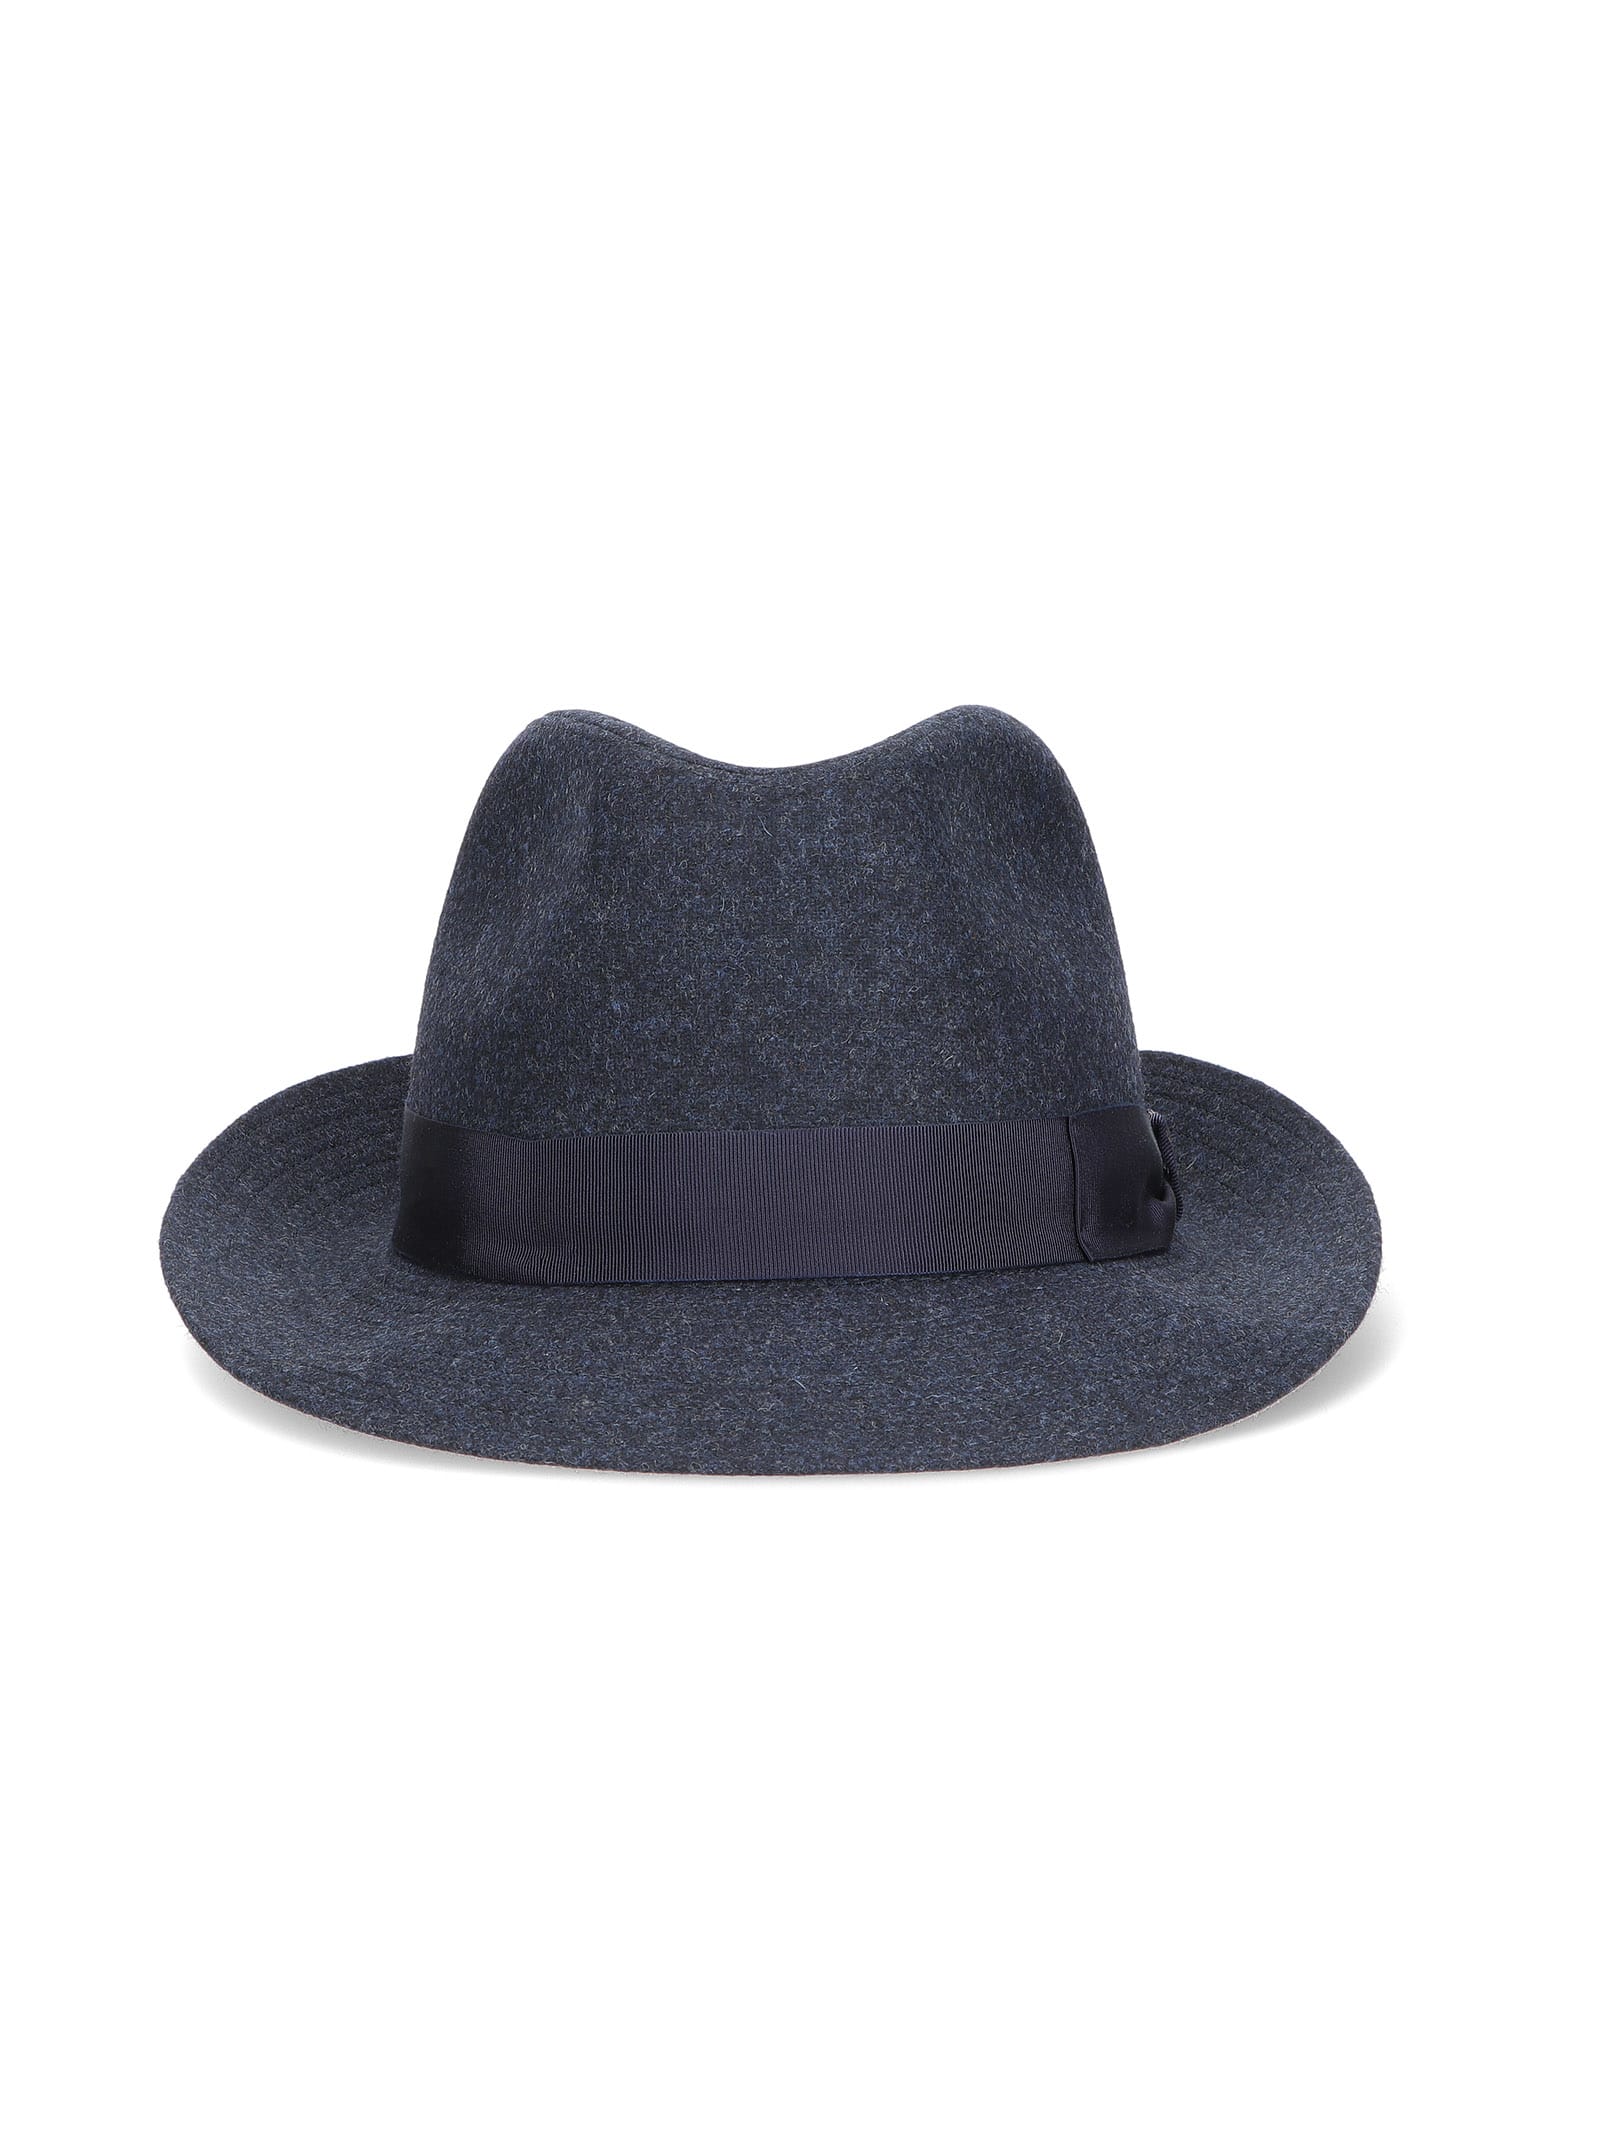 Borsalino Fabric Fedora Hat